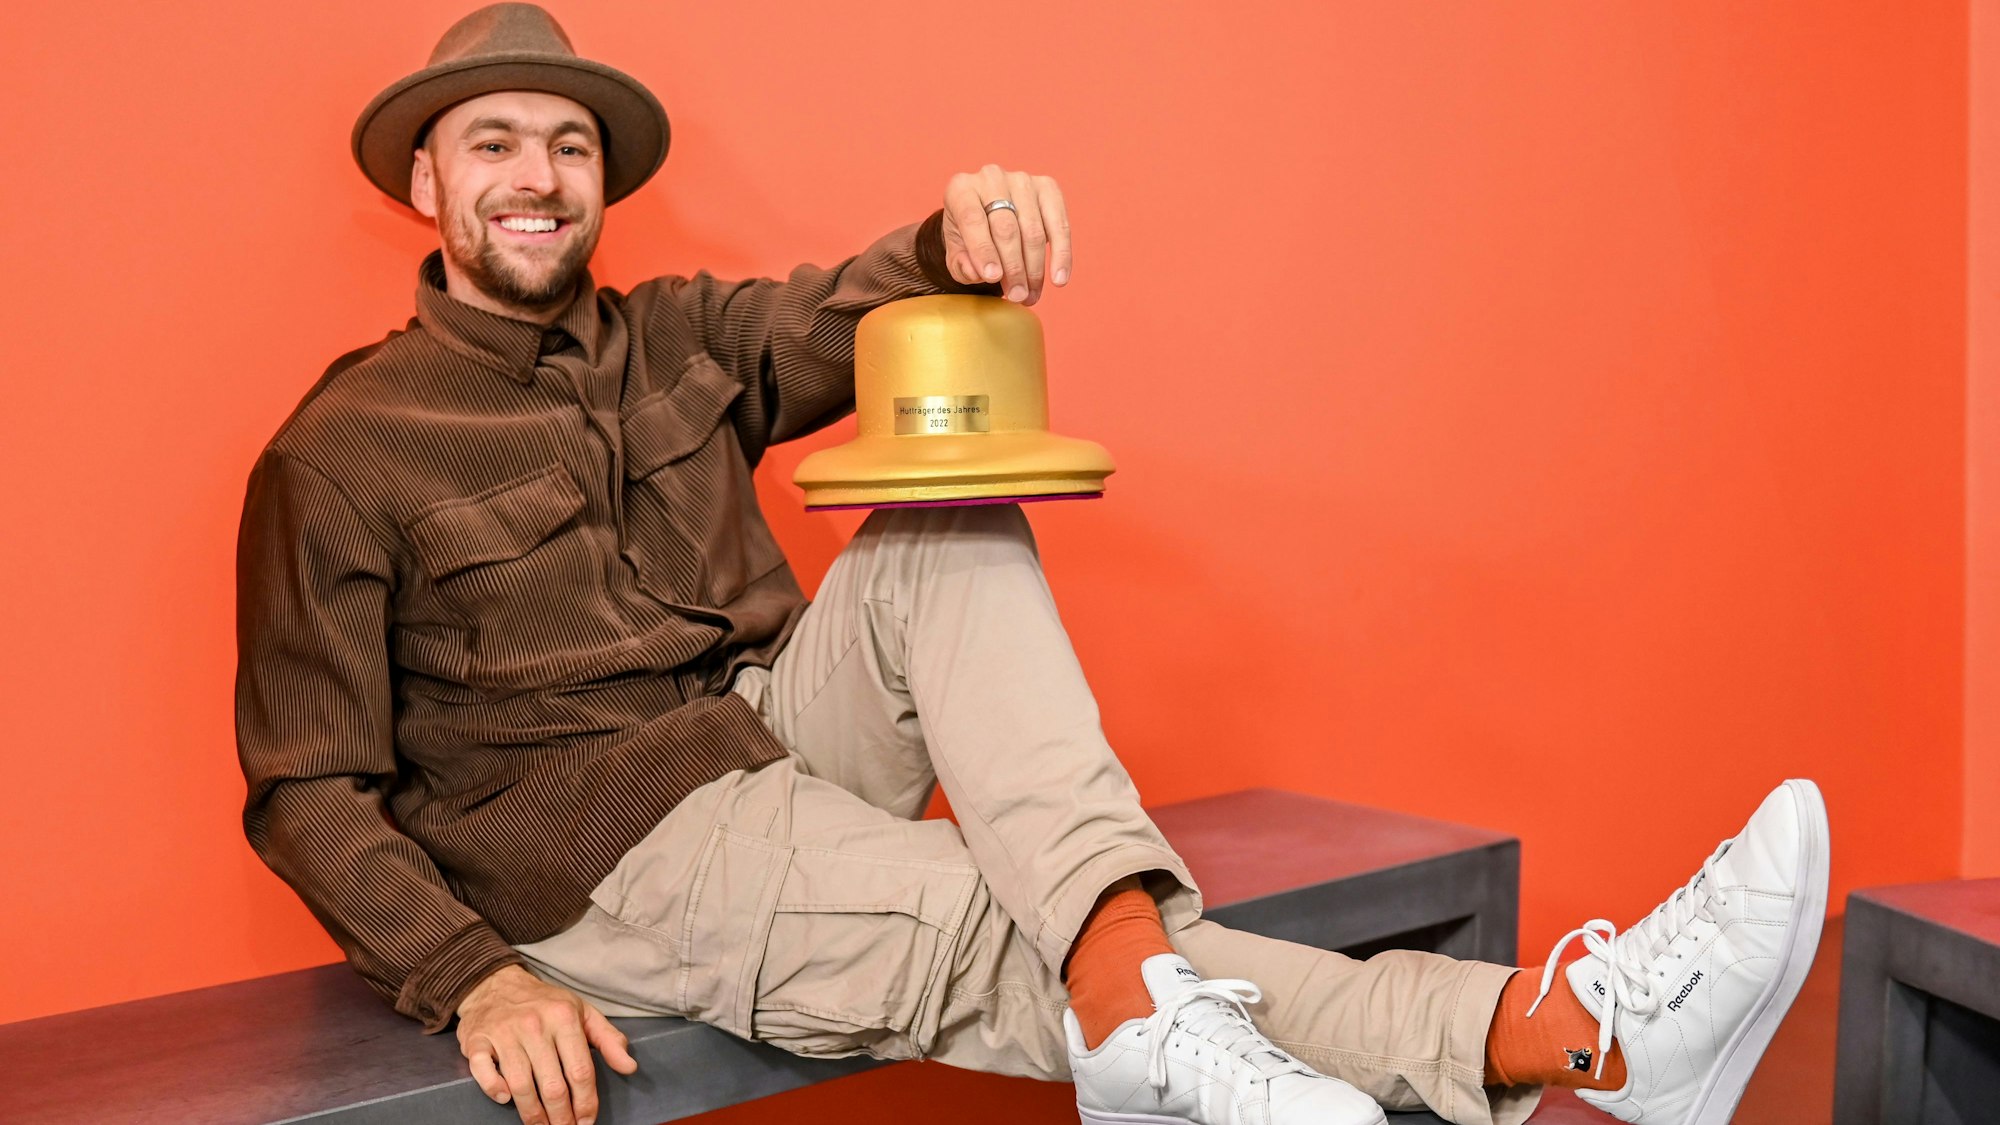 Der Musiker Max Mutzke posiert mit dem Goldenen Hut-Award und sitzt auf einer Bank in einem Raum mit roten Wänden.